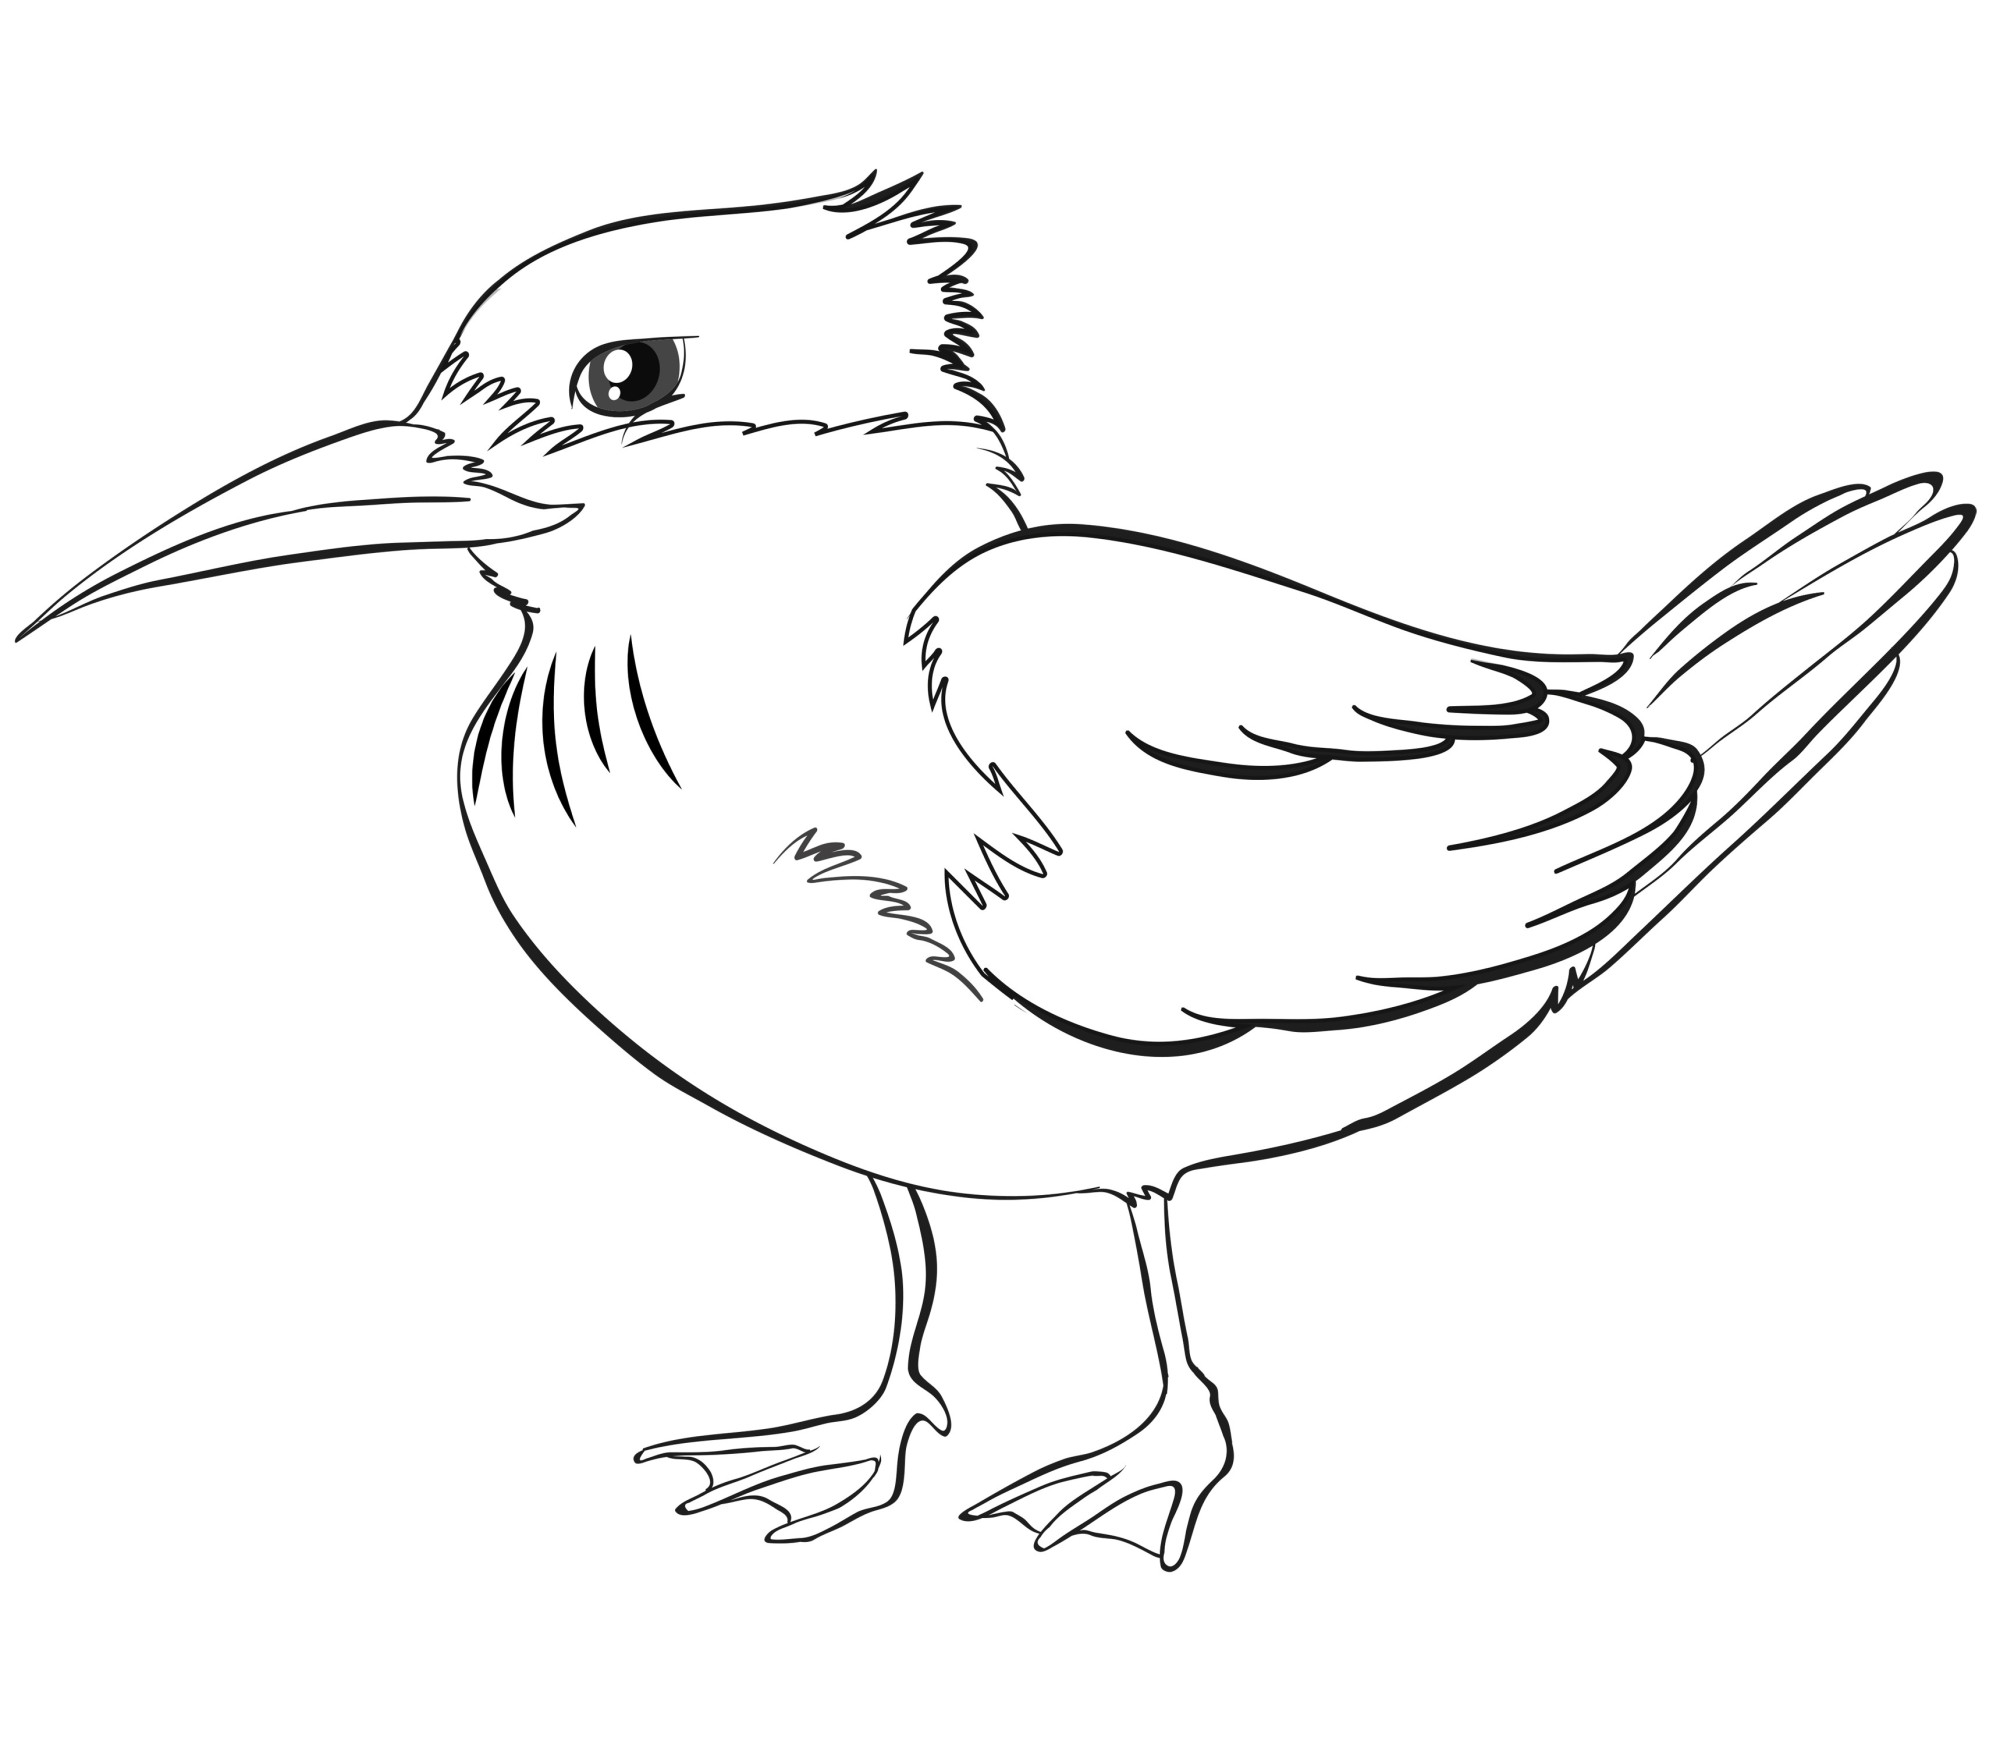 Раскраска для детей: дикая птичка с длинным острым клювом